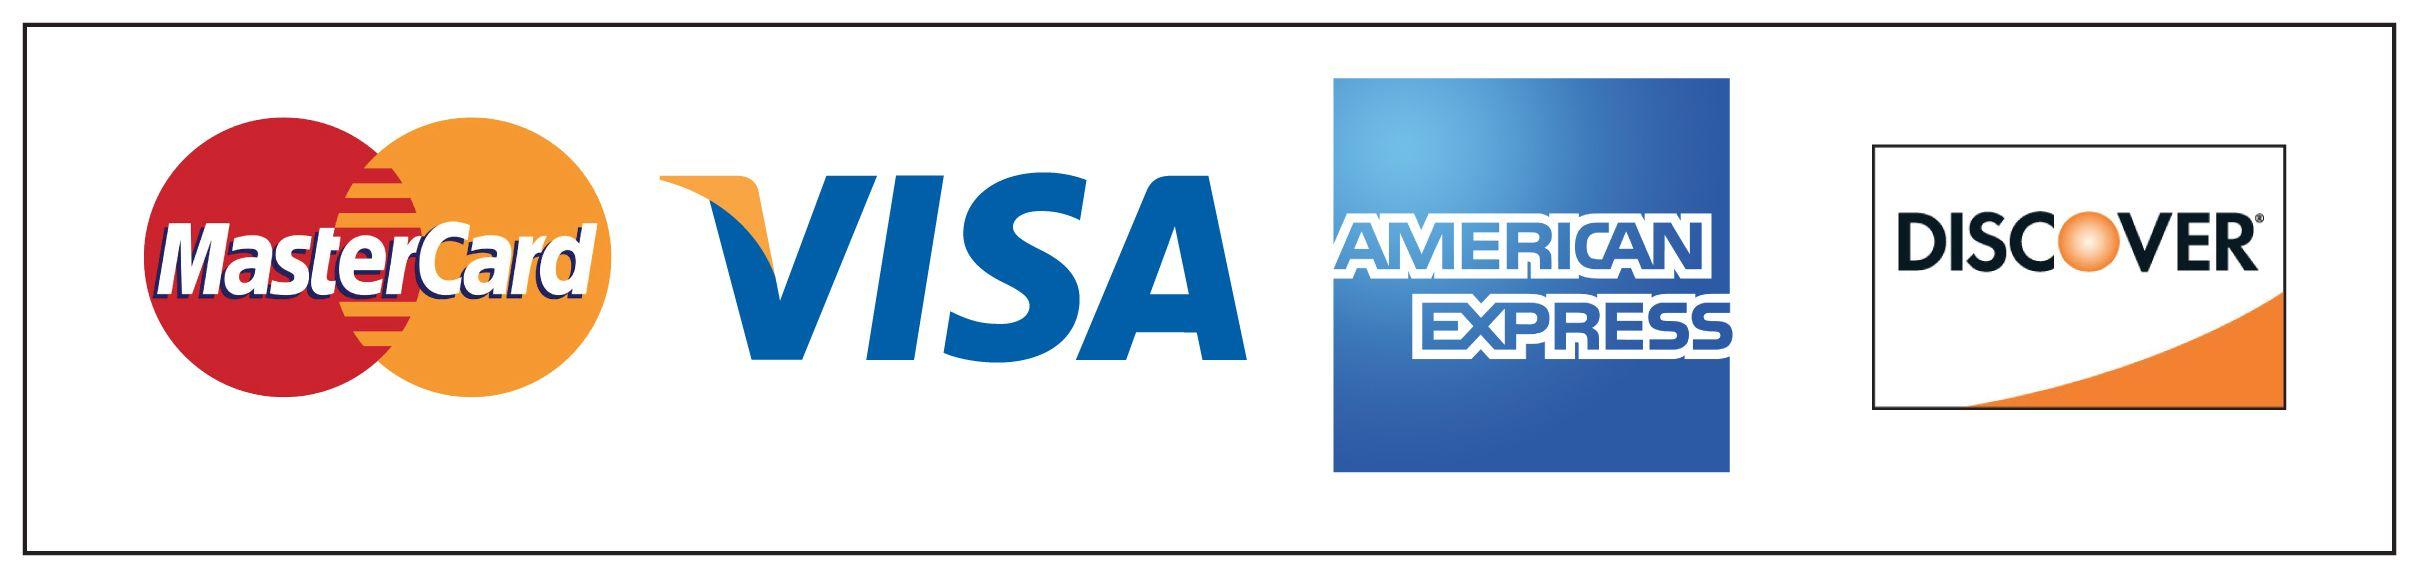 Printable Visa MasterCard Discover Logo - Discover card Logos